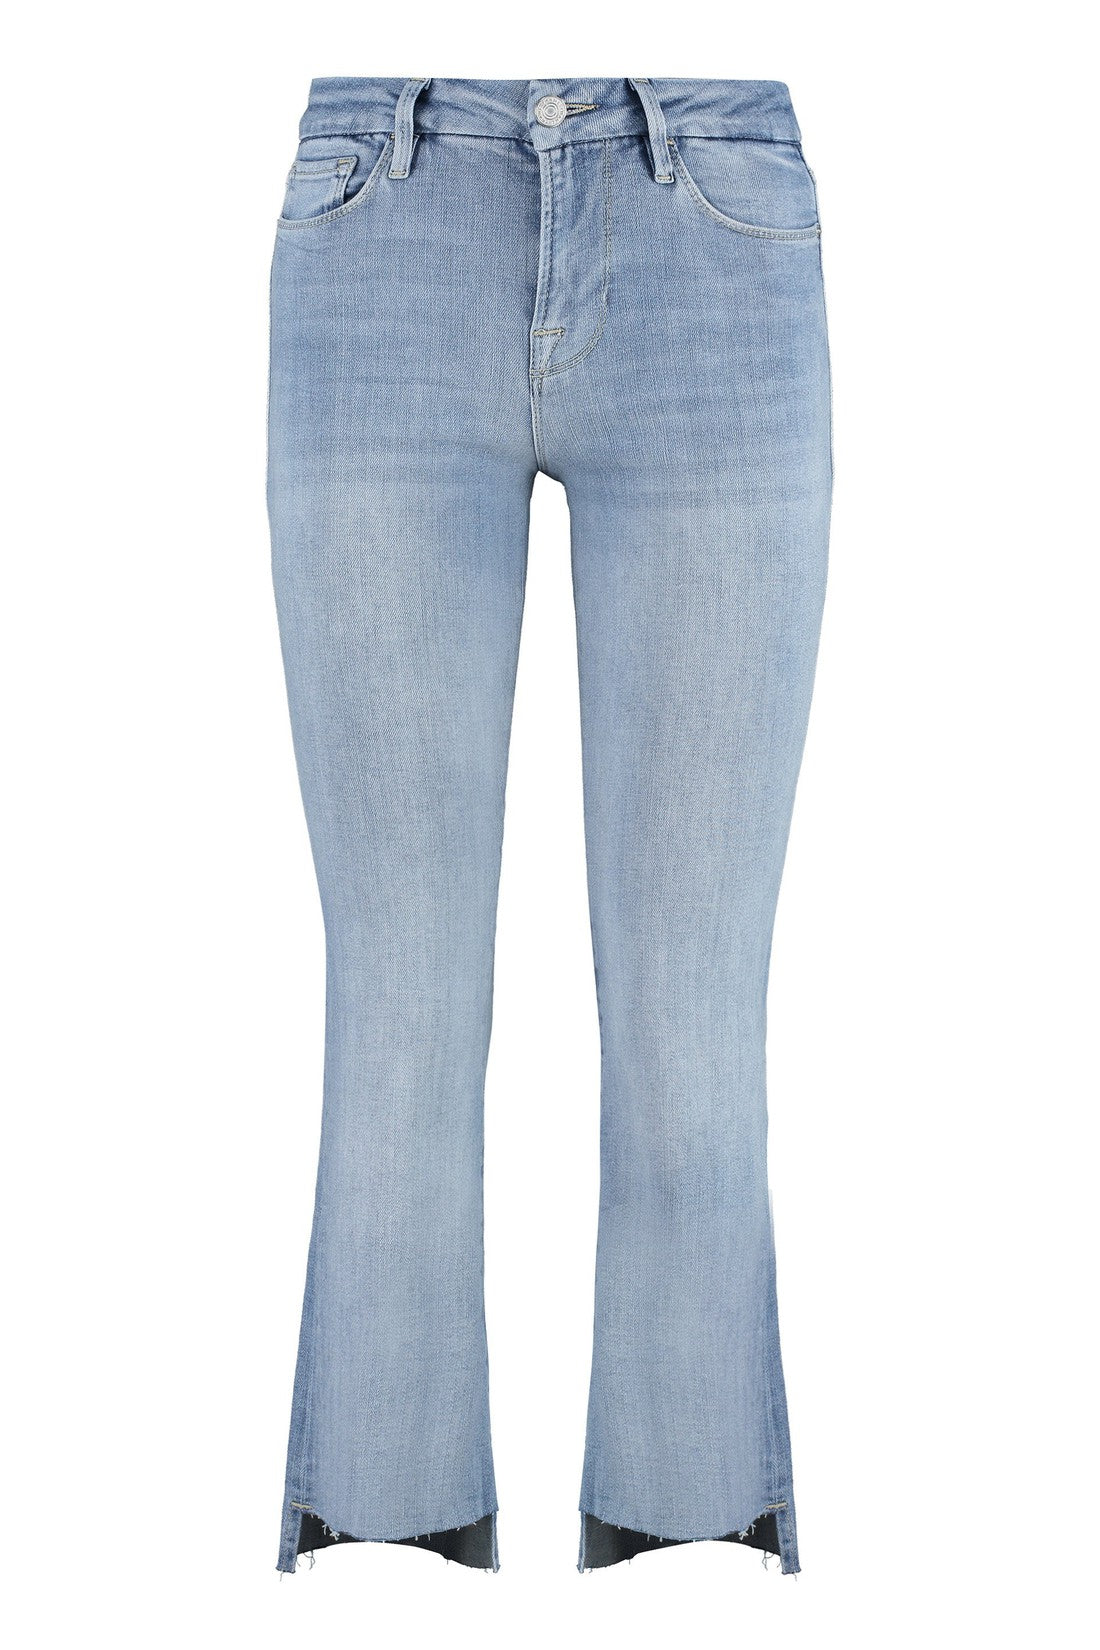 Frame-OUTLET-SALE-Le Crop Mini Boot jeans-ARCHIVIST